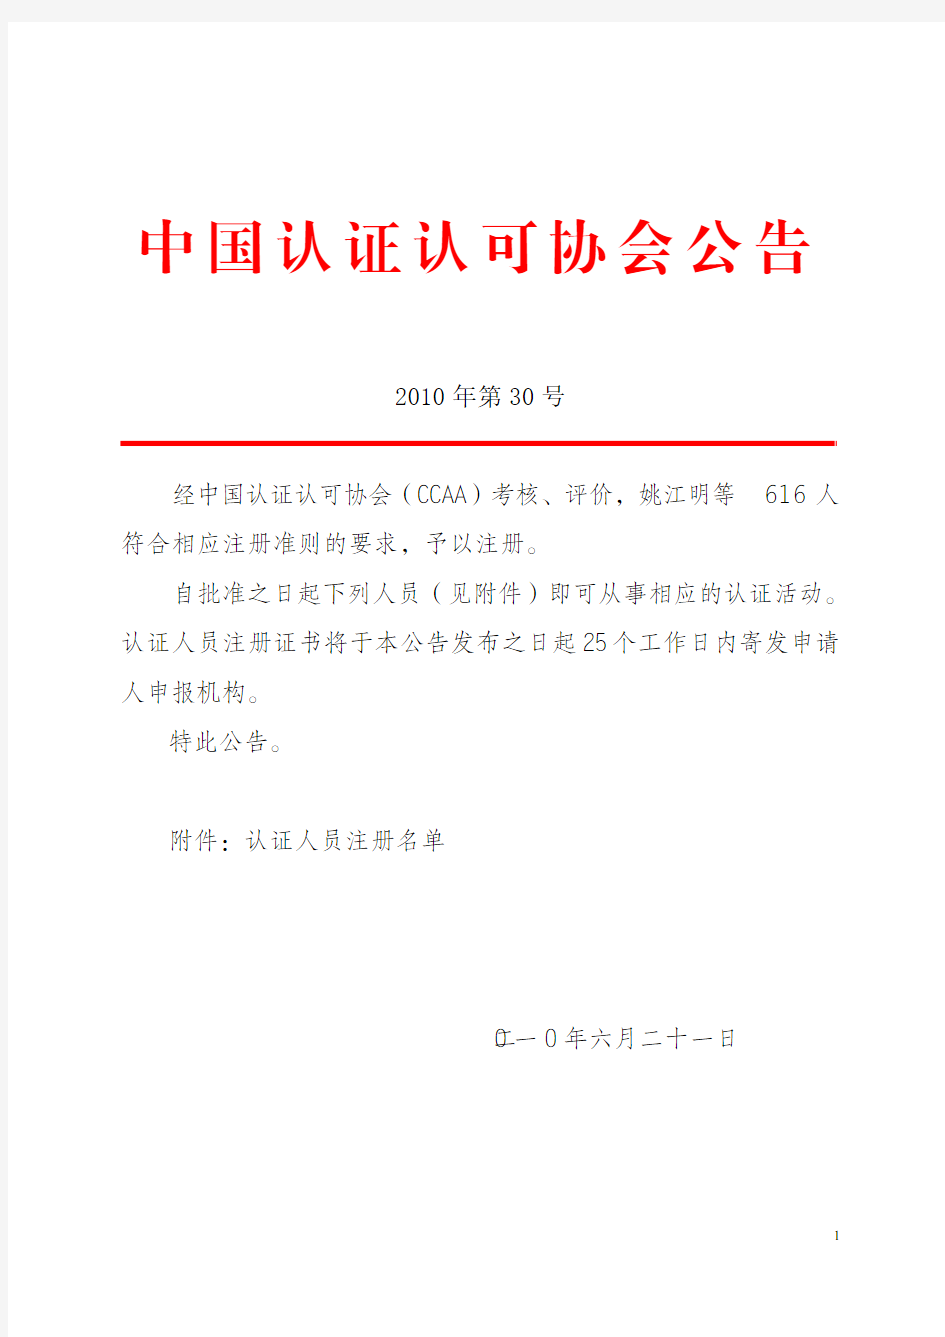 中国认证认可协会公告2010 年第 30 号